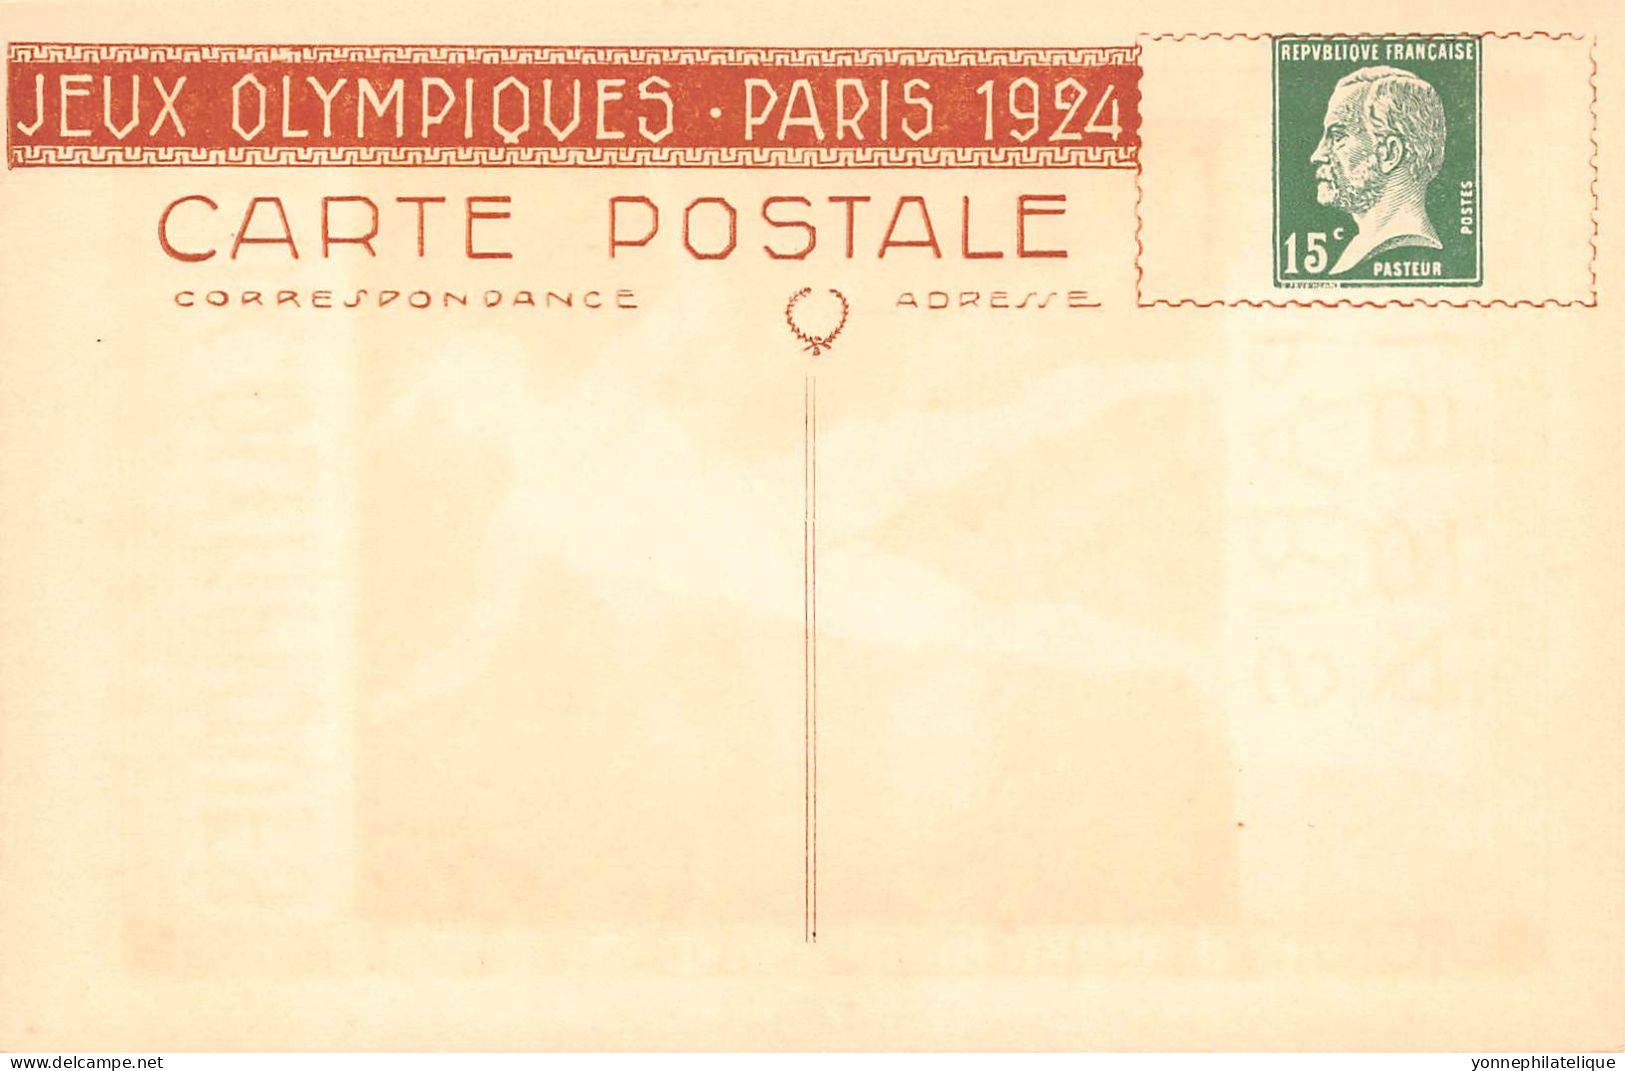 JEUX OLYMPIQUES 1924 - Série complète des 8 cartes dans sa pochette d'origine - superbe état - RARE